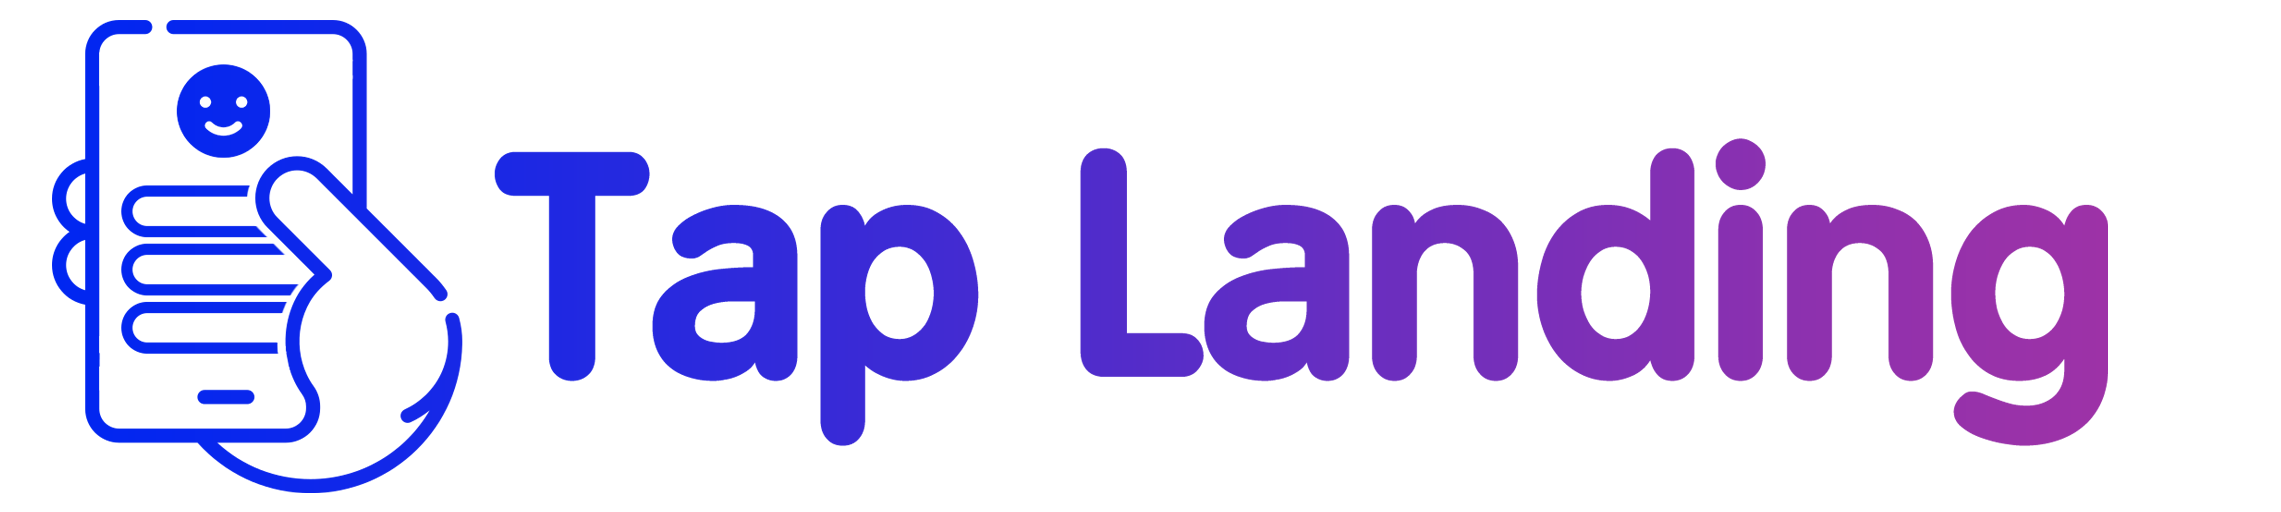 TapLanding-logo